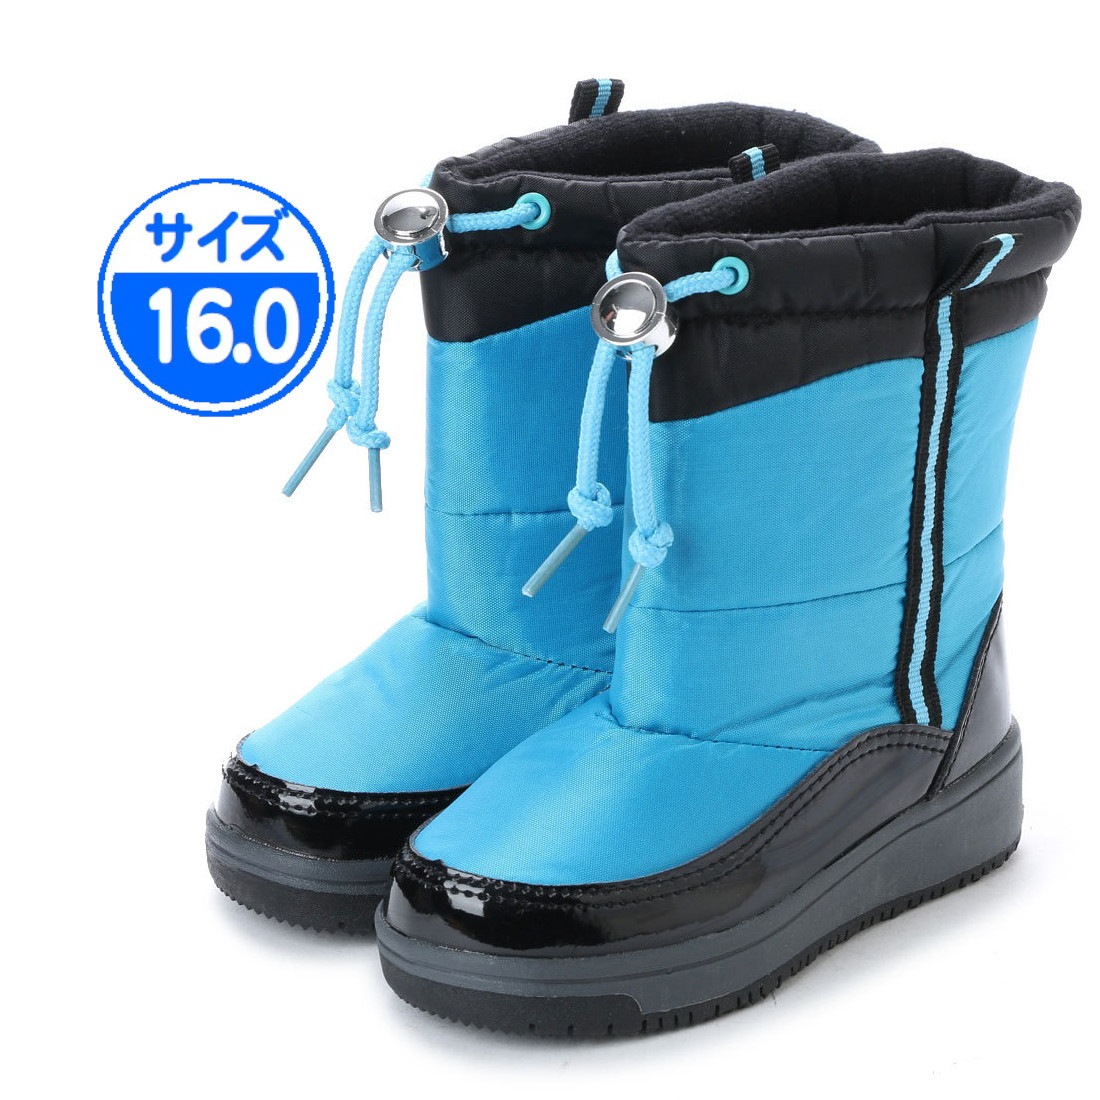 【新品 未使用】子供用 防寒ブーツ ブルー 16.0cm 青 17990